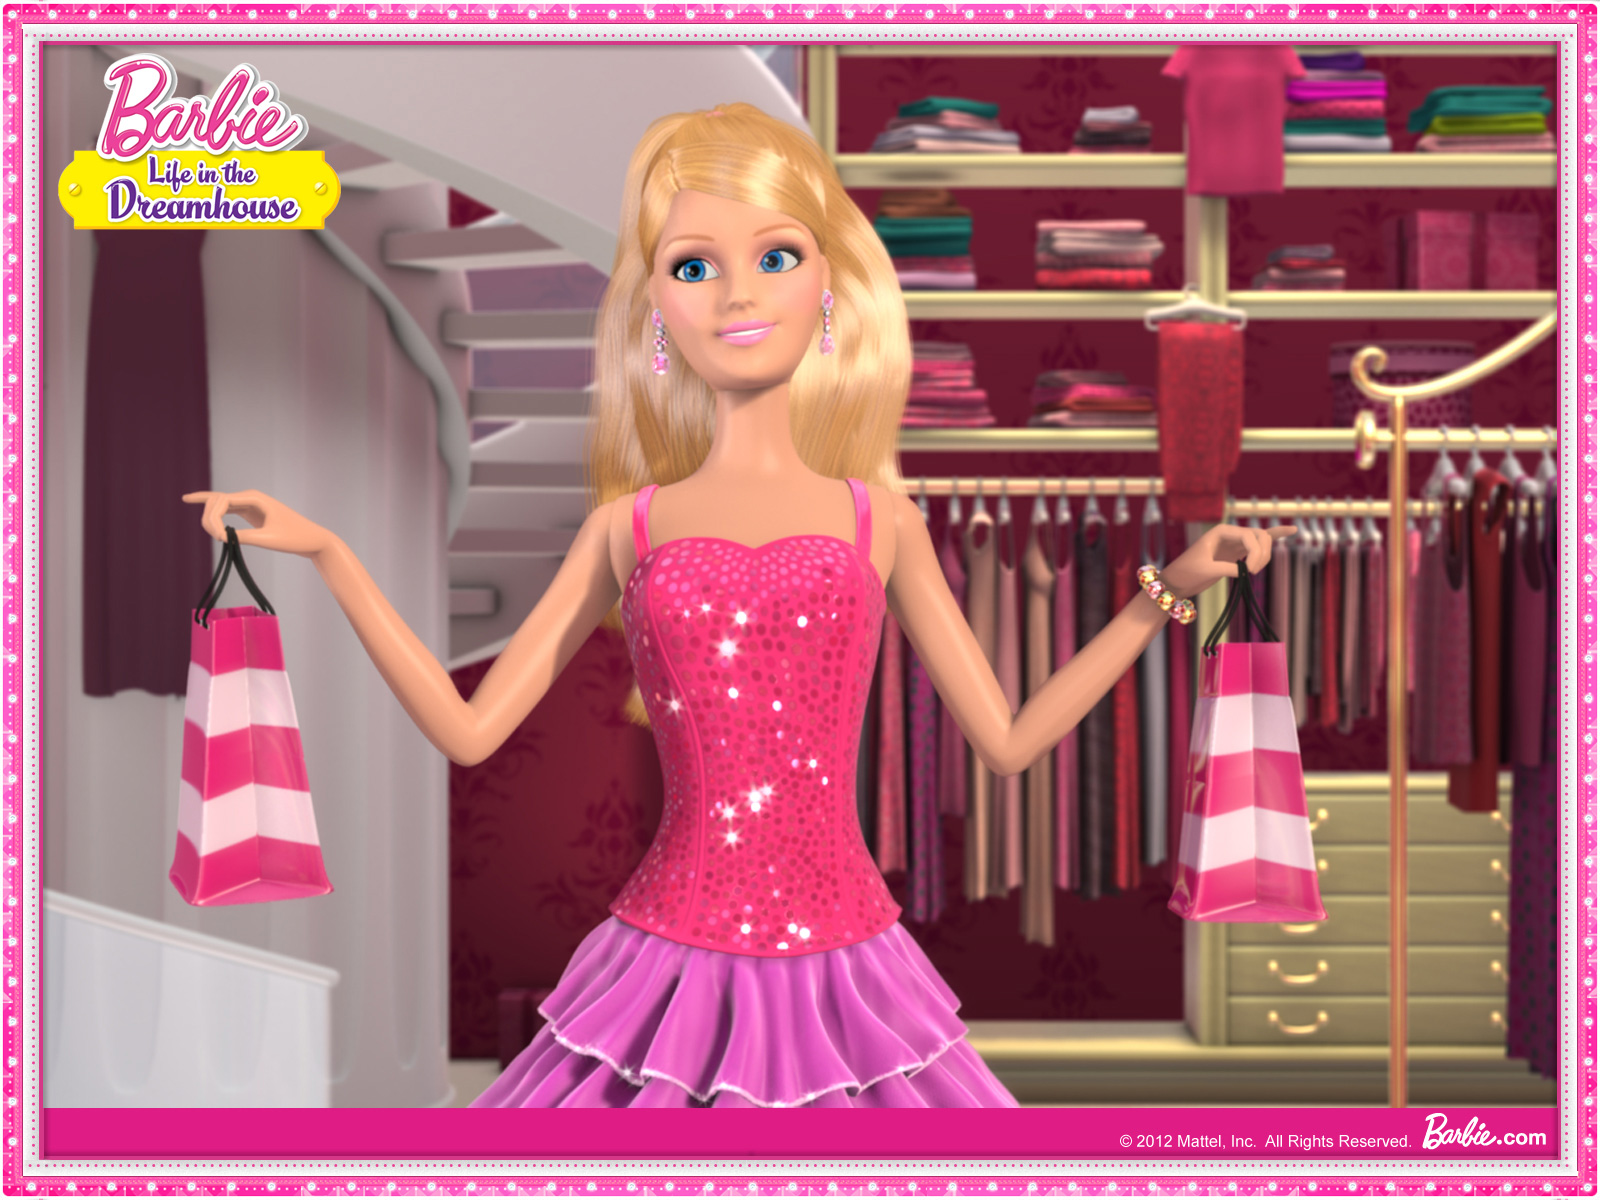 Barbie Life in The Dreamhouse Wallpaper HD | PixelsTalk.Net